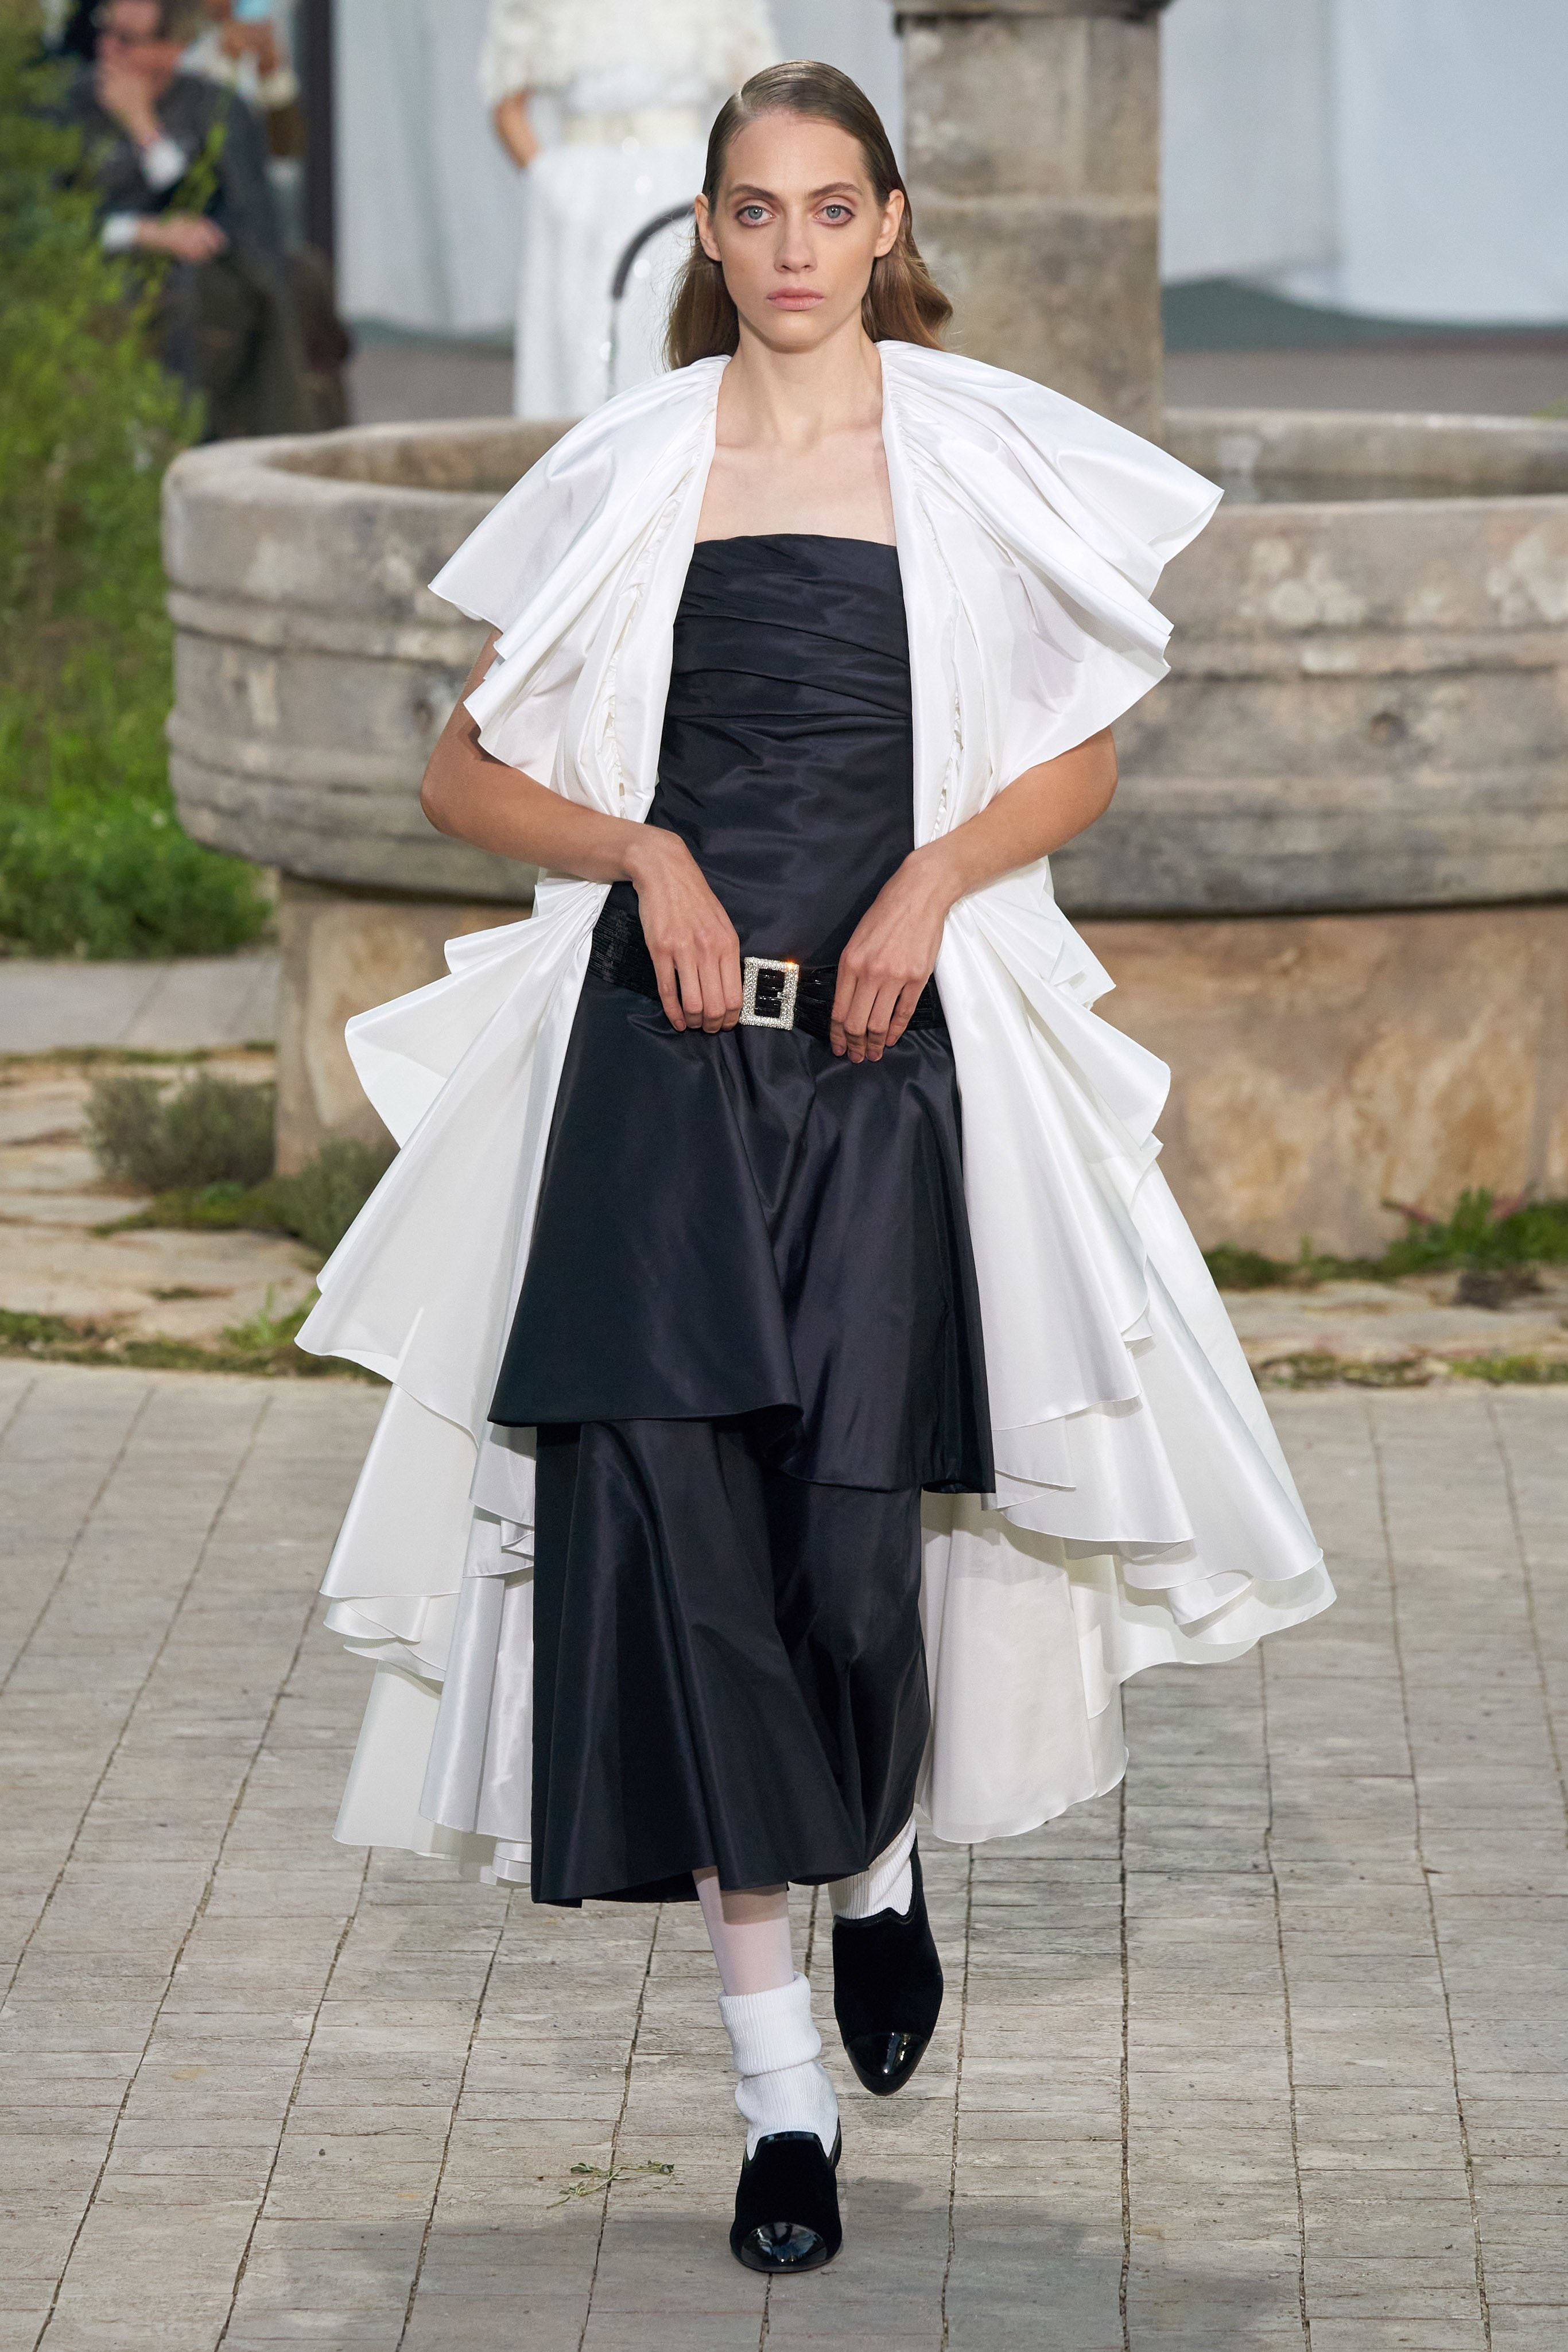 chanel haute couture 2020 ss Virginie Viard paris show